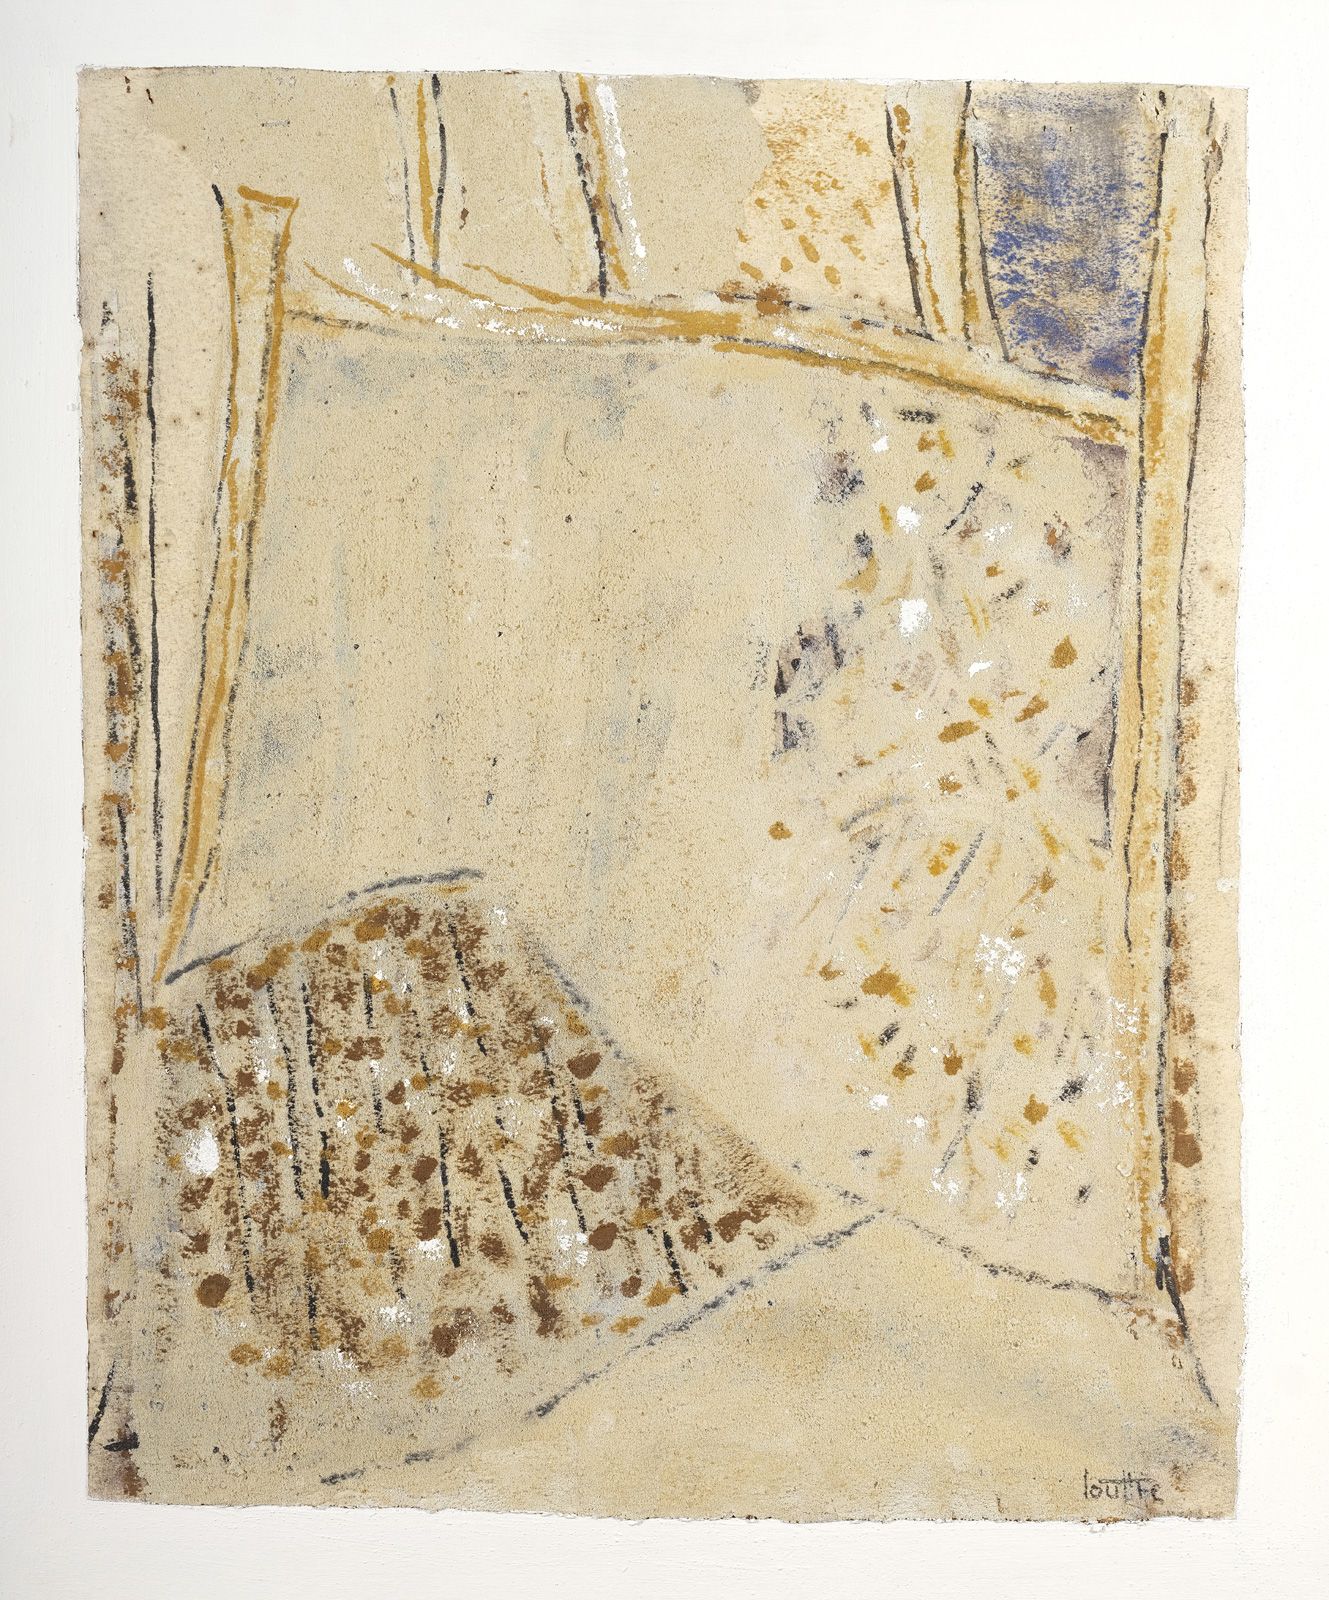 Null LOUTTRE-BISSIÈRE (1926-2012)

Peinturelle

Technique mixte et sable sur pap&hellip;